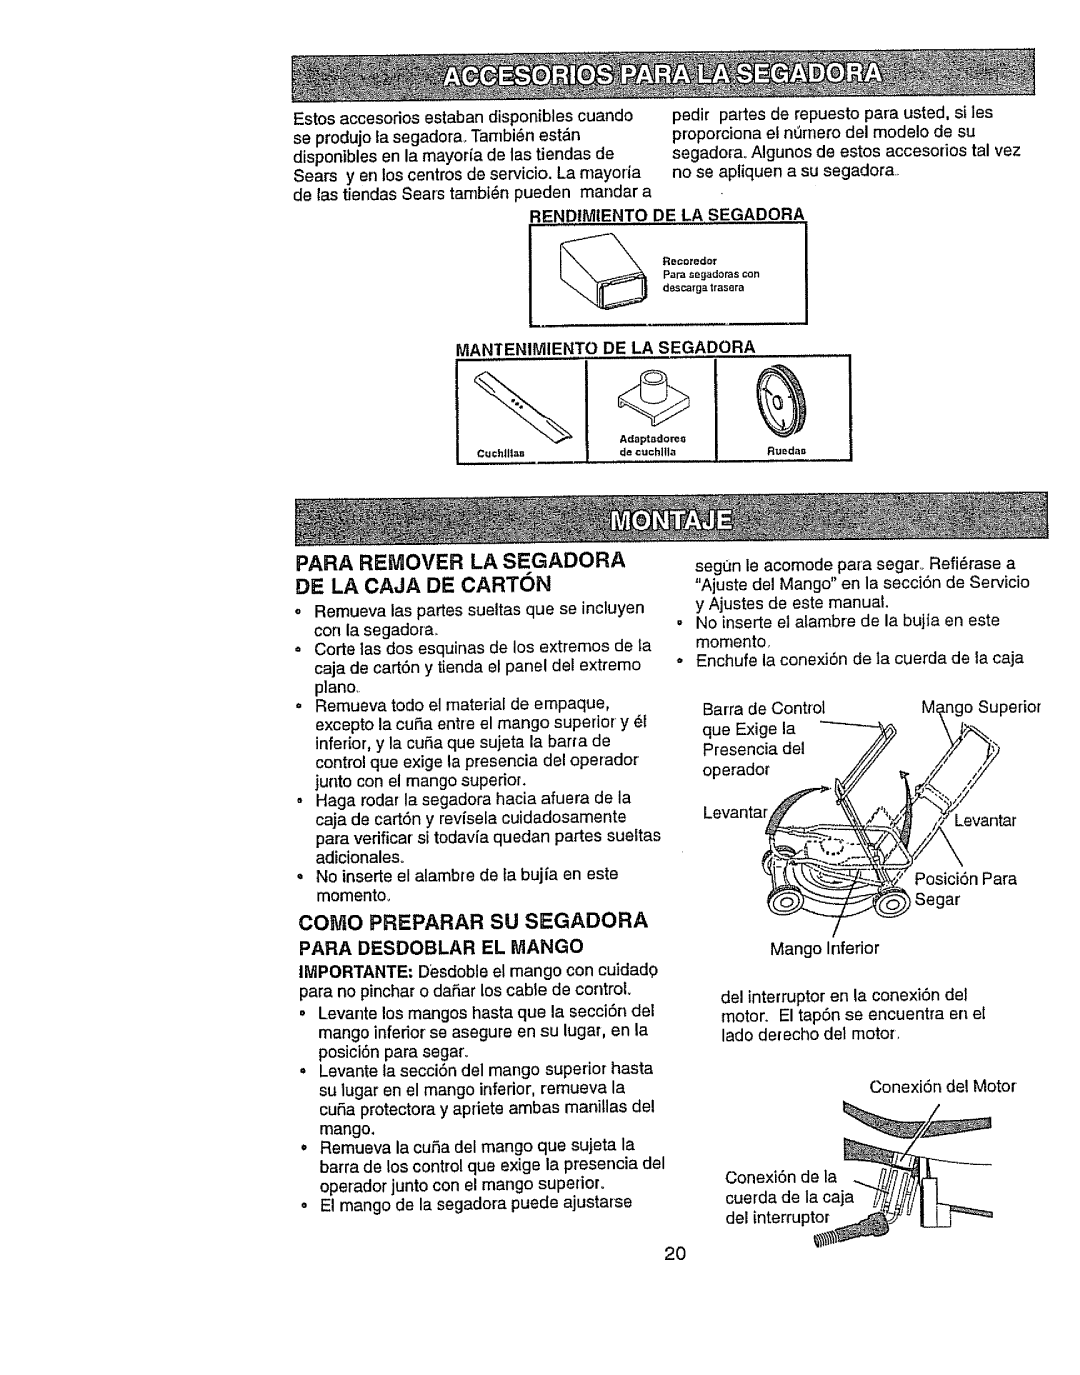 Craftsman 917.386411 manual Para Remover La Segadora De La Caja De Carton, Como Prepararsusegadora, Posici6n Para, mango 